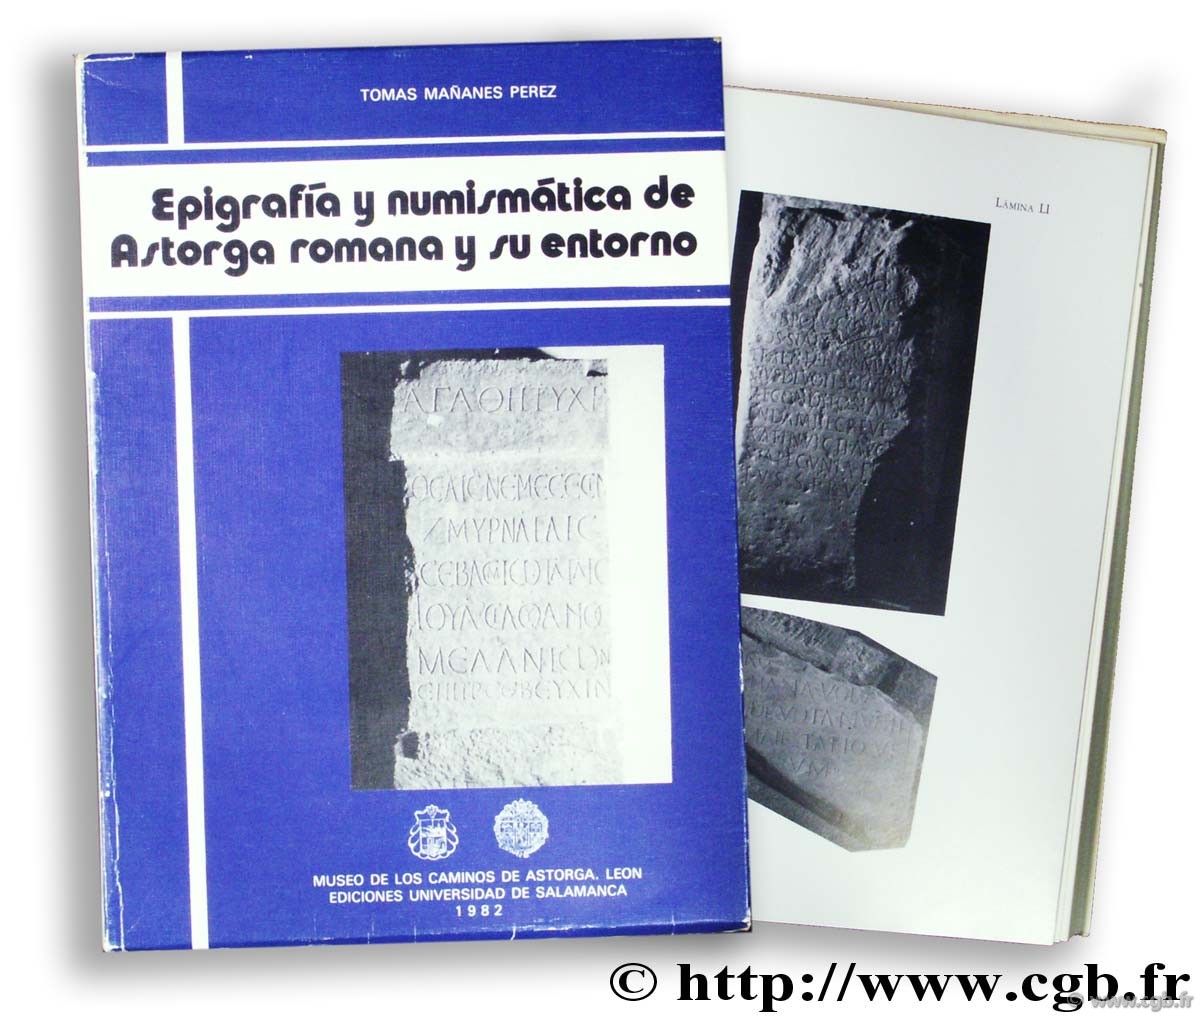 Epigrafía et numismática de Astorga romana y su entorno MAÑANES PEREZ T.